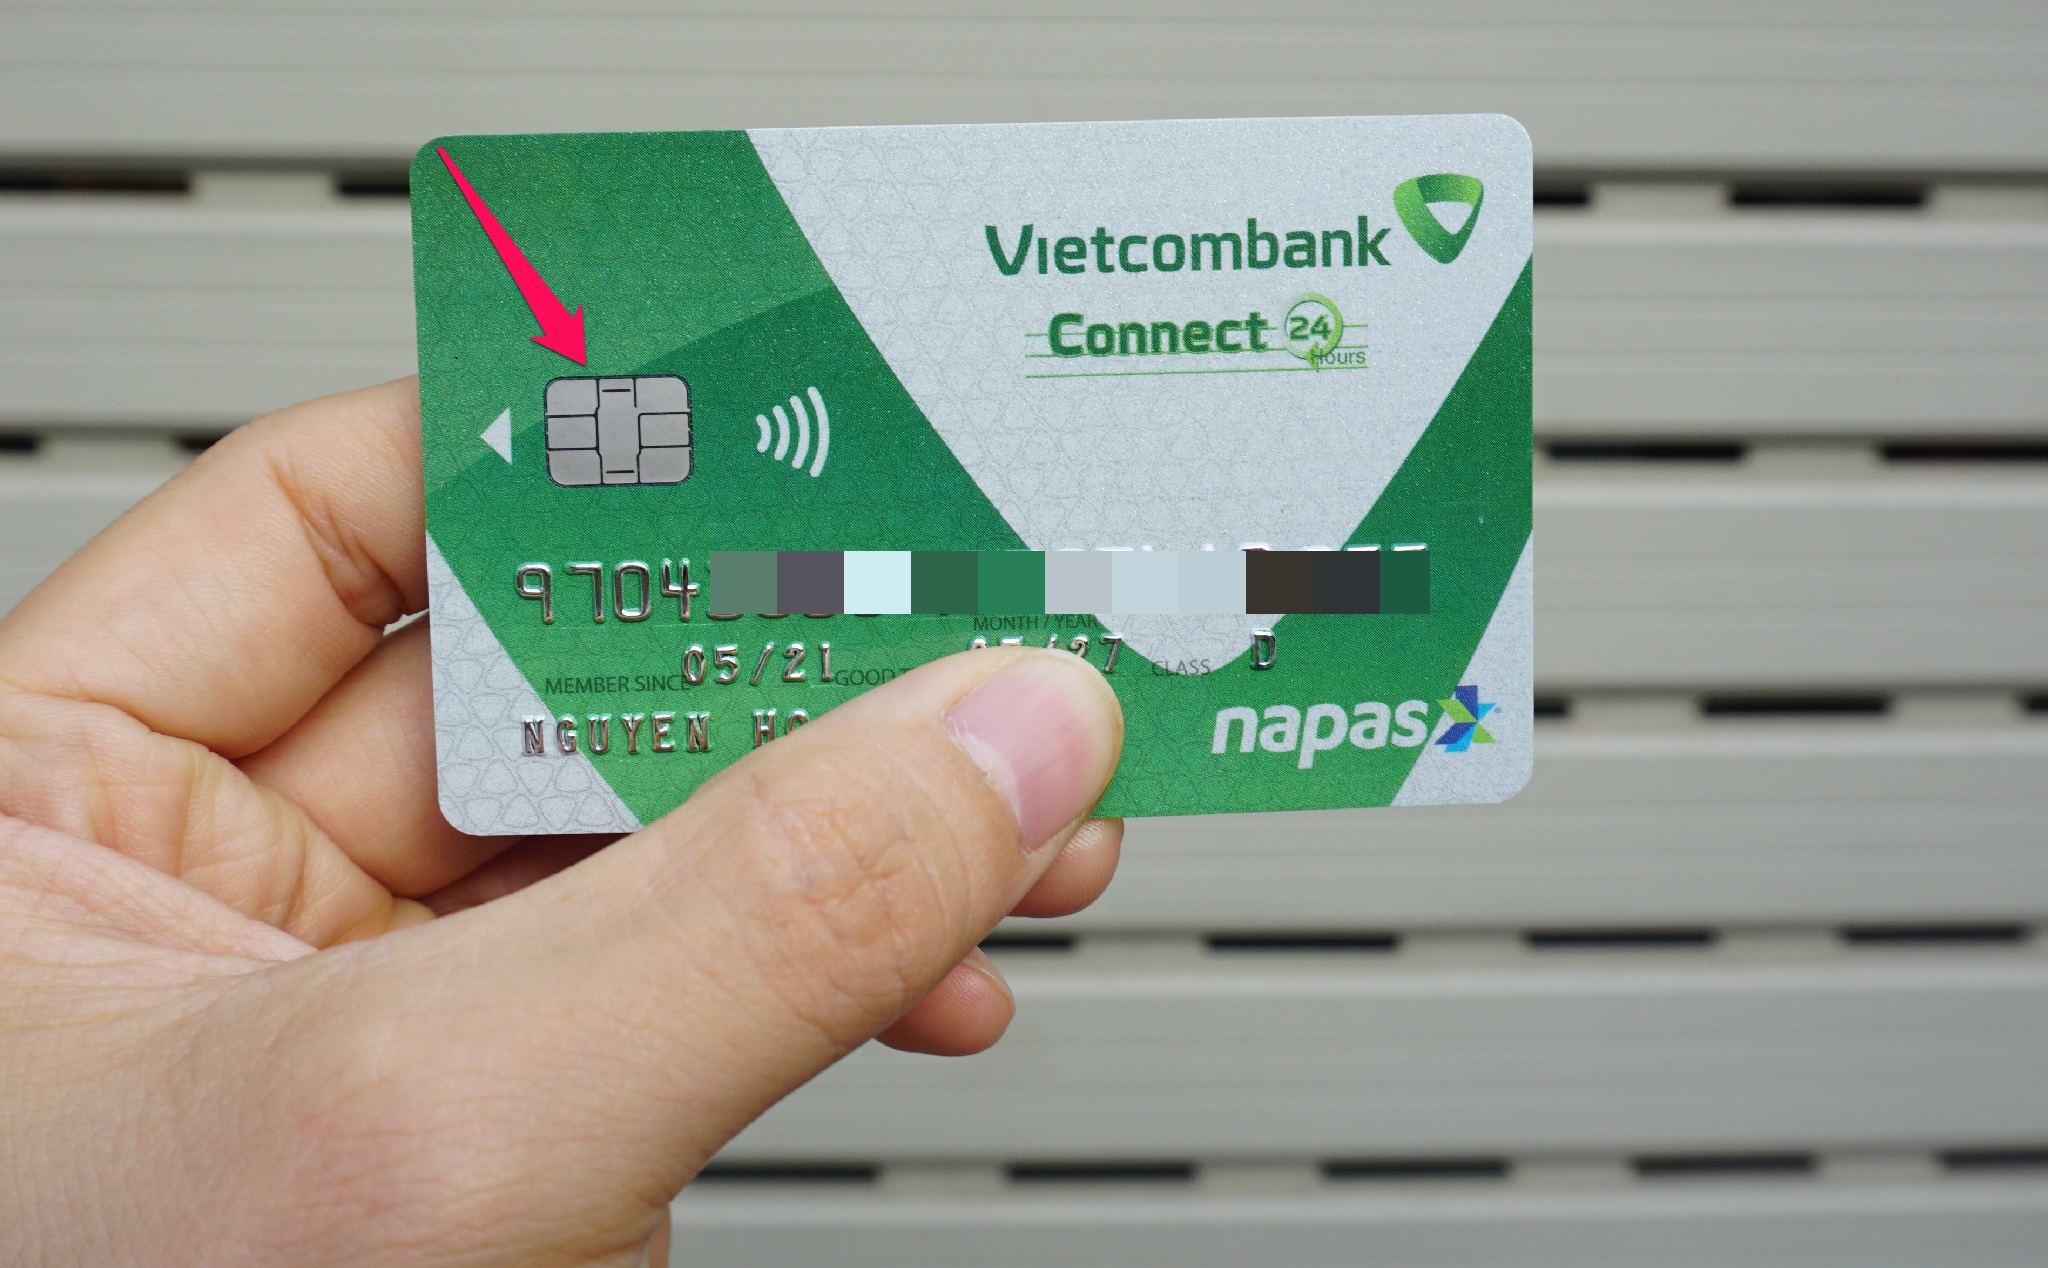 Trên tay thẻ ATM VCB gắn chip contactless | Tinh tế